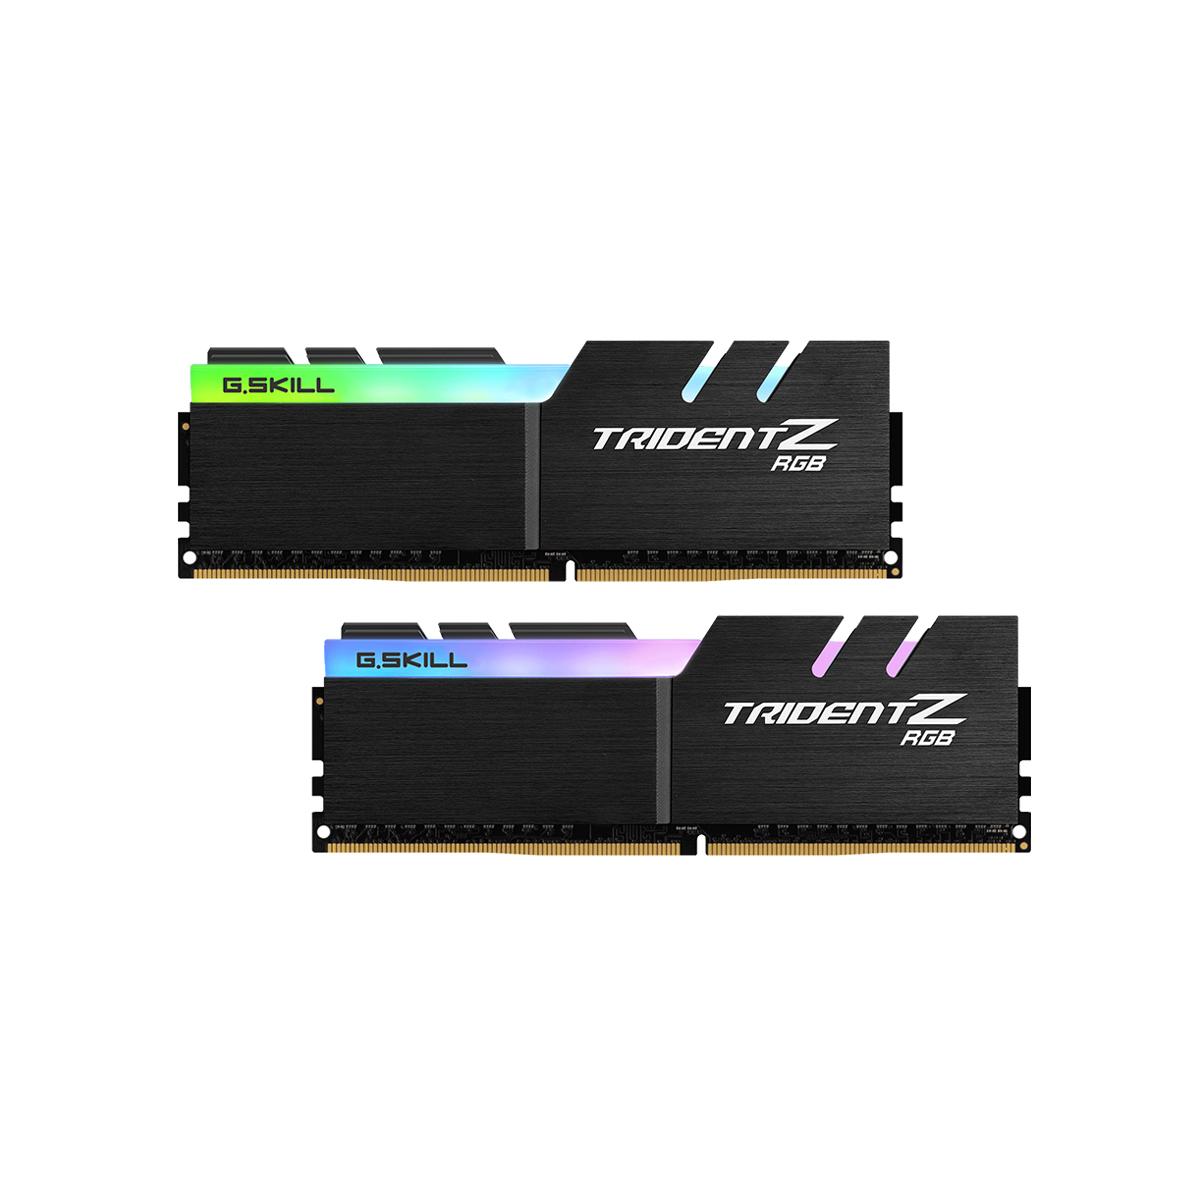 MEMORIA DIMM DDR4 G.SKILL (F4-3600C17D-32GTZR) 32GB (2X16GB) 3600 MHZ, TRIDENT Z RGB - F4-3600C17D-32GTZR